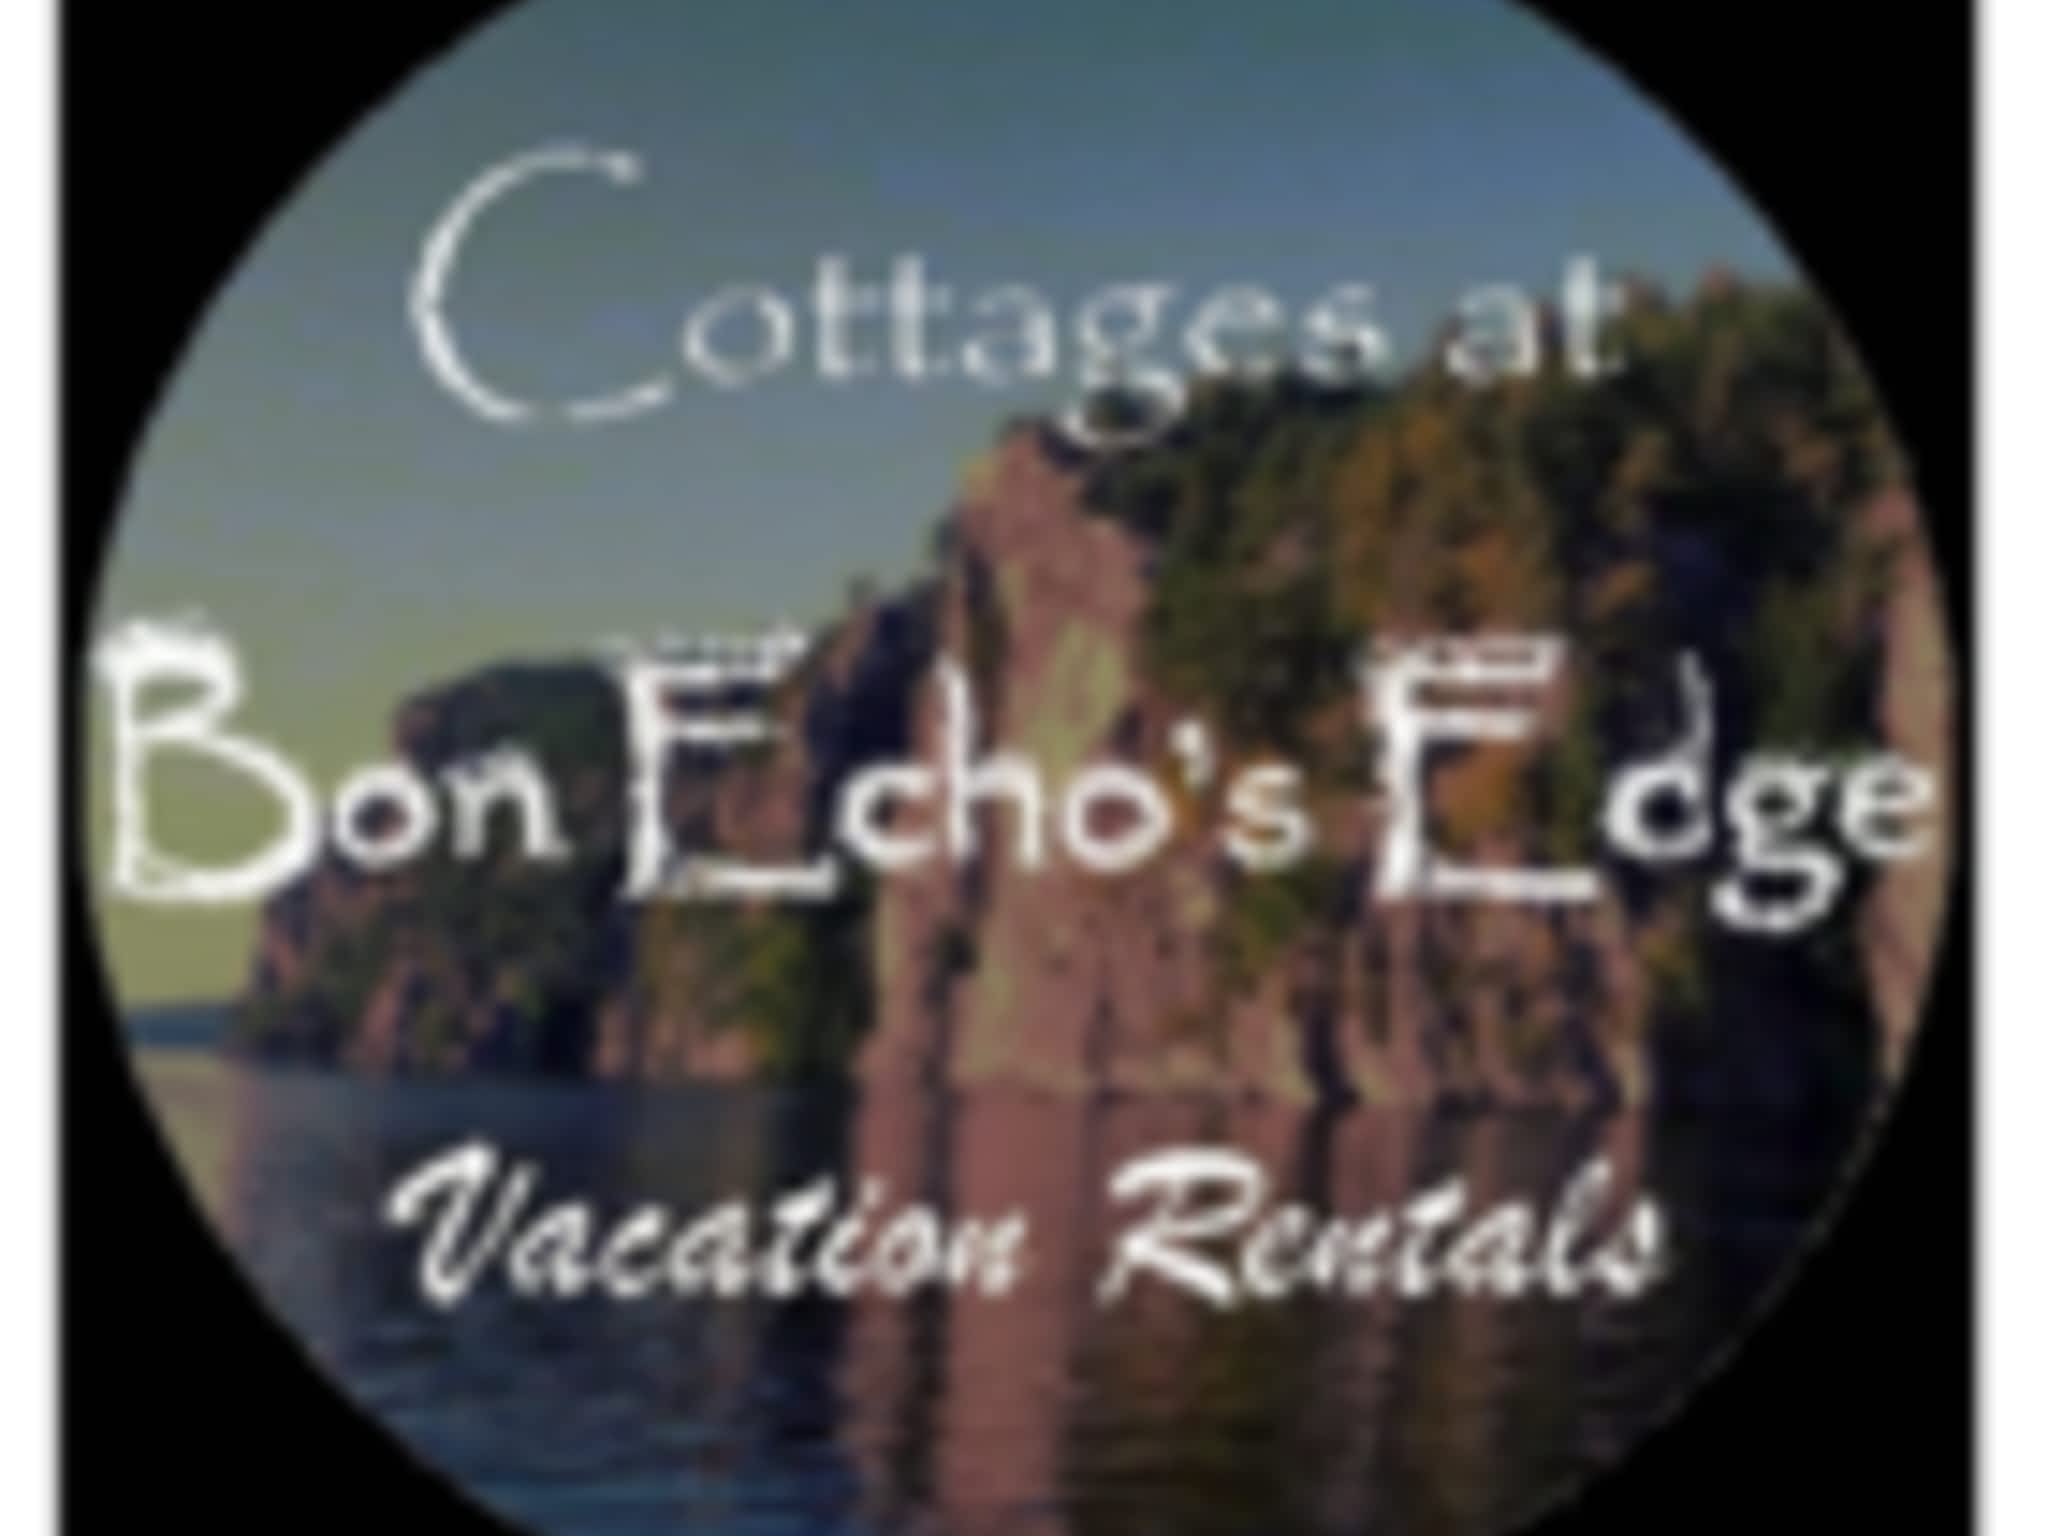 photo Cottages at Bon Echo's Edge